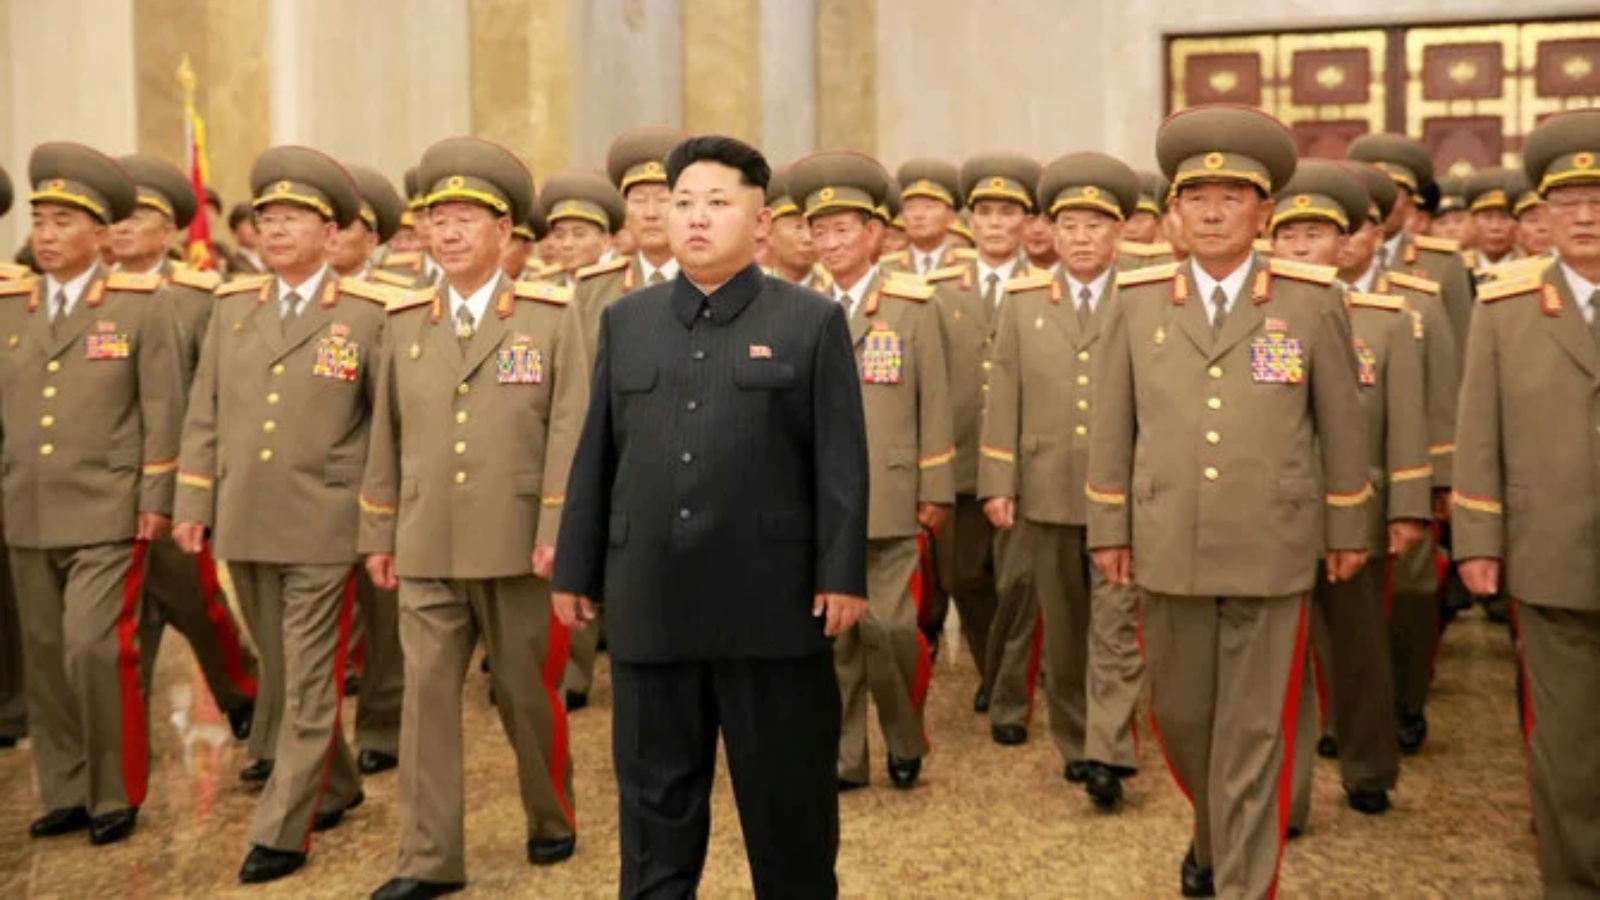 زعيم كوريا الشمالية كيم جون أون (في الوسط) يزور قصر كومسوسان للشمس في بيونغ يانغ لإحياء ذكرى الزعيمين الراحلين كيم إيل سونغ وكيم جونغ آي